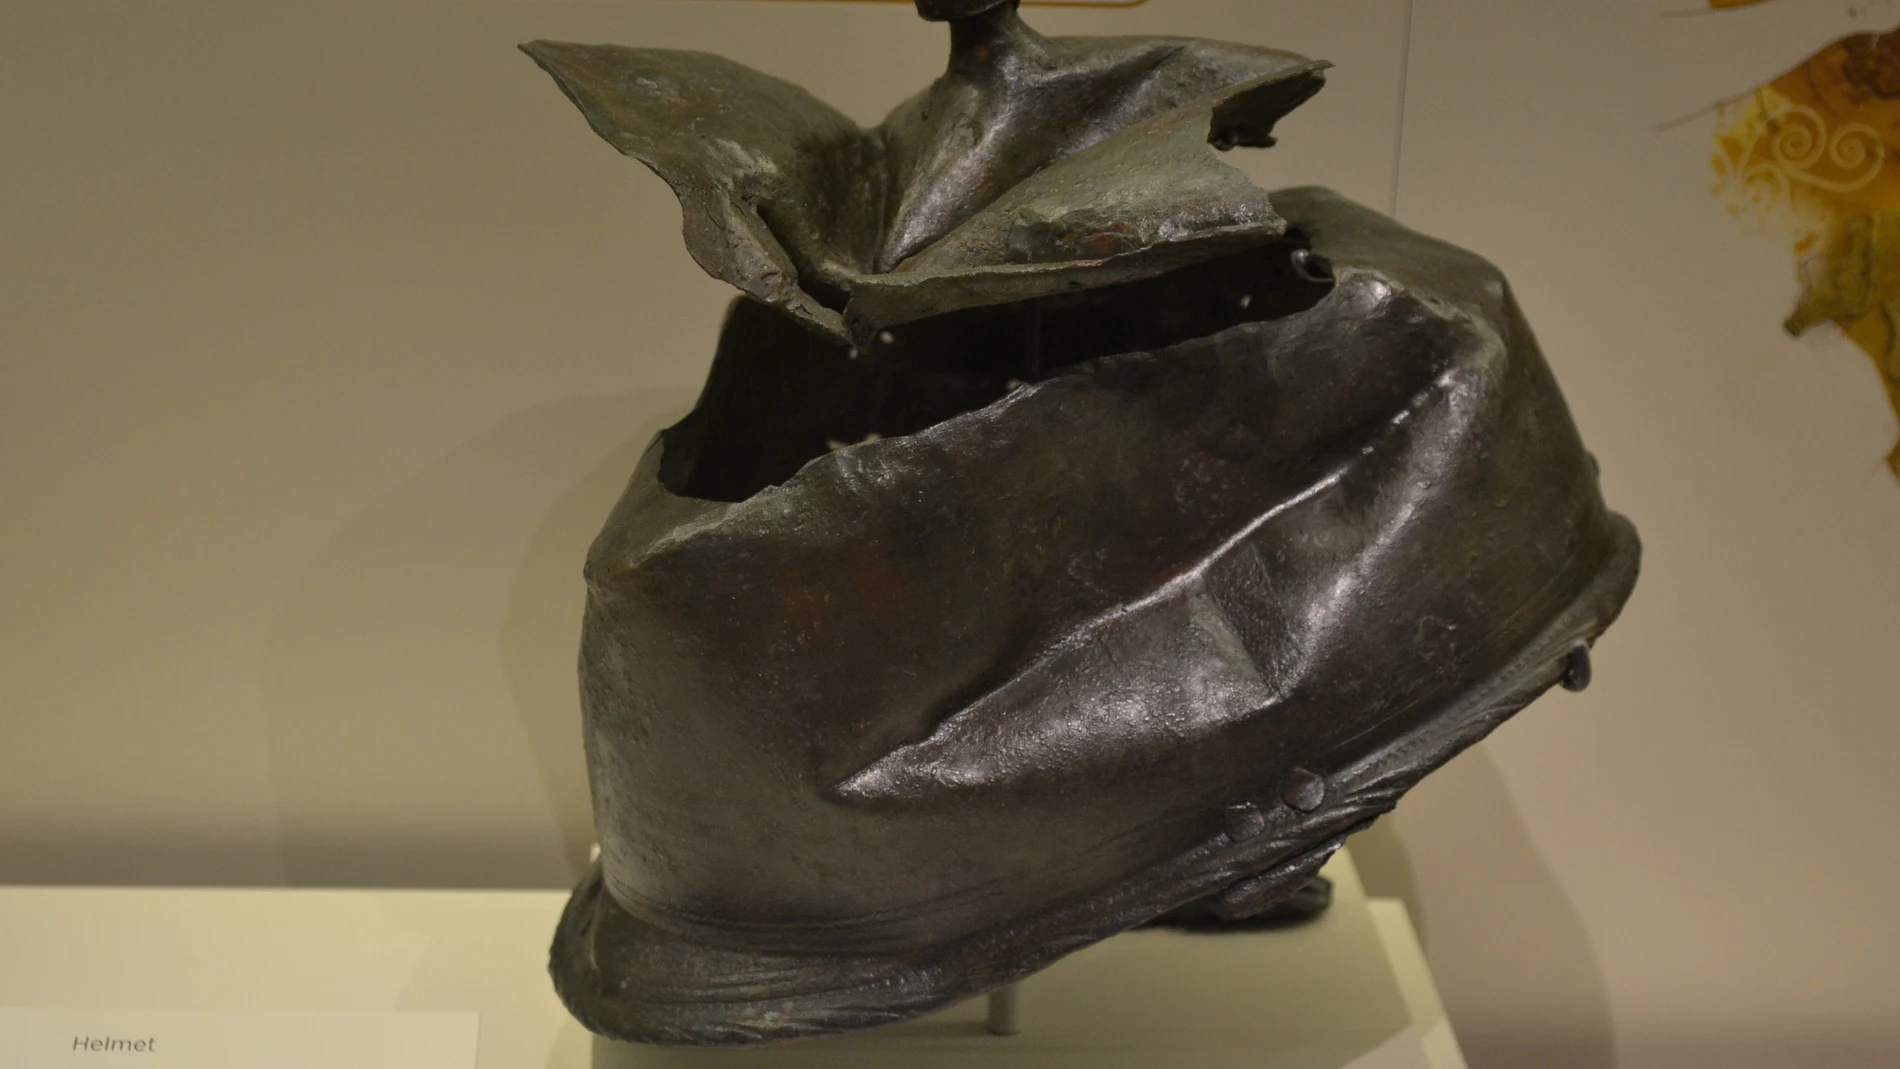 Casco itálico Montefortino de bronce completamente hundido e inutilizado. Muy empleado entre las fuerzas romanas y cartaginesas durante la Segunda Guerra Púnica